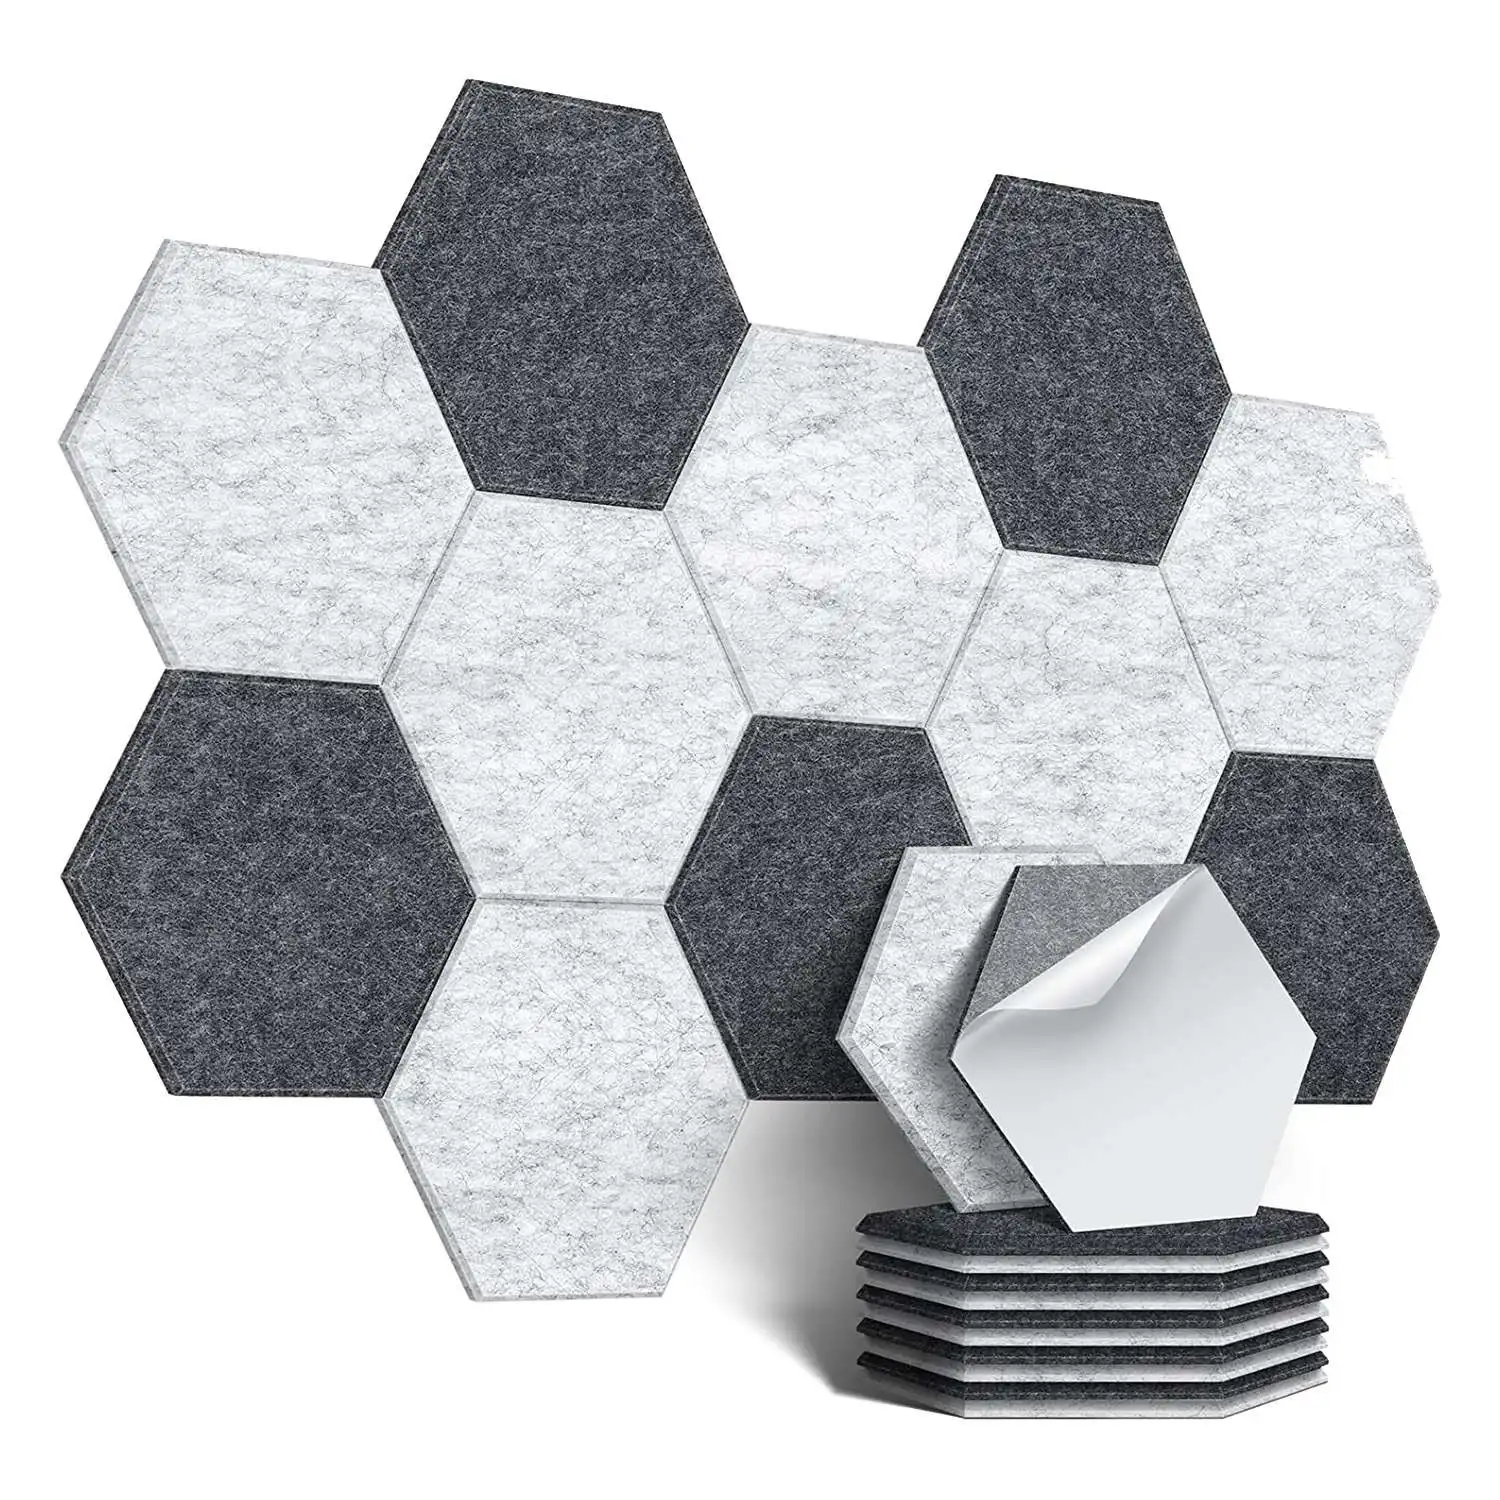 

12 упаковок самоклеящиеся звукостойкие пенопластовые панели шестиугольные акустические панели, для студии, дома и офиса (темно-серый + серебристо-серый)